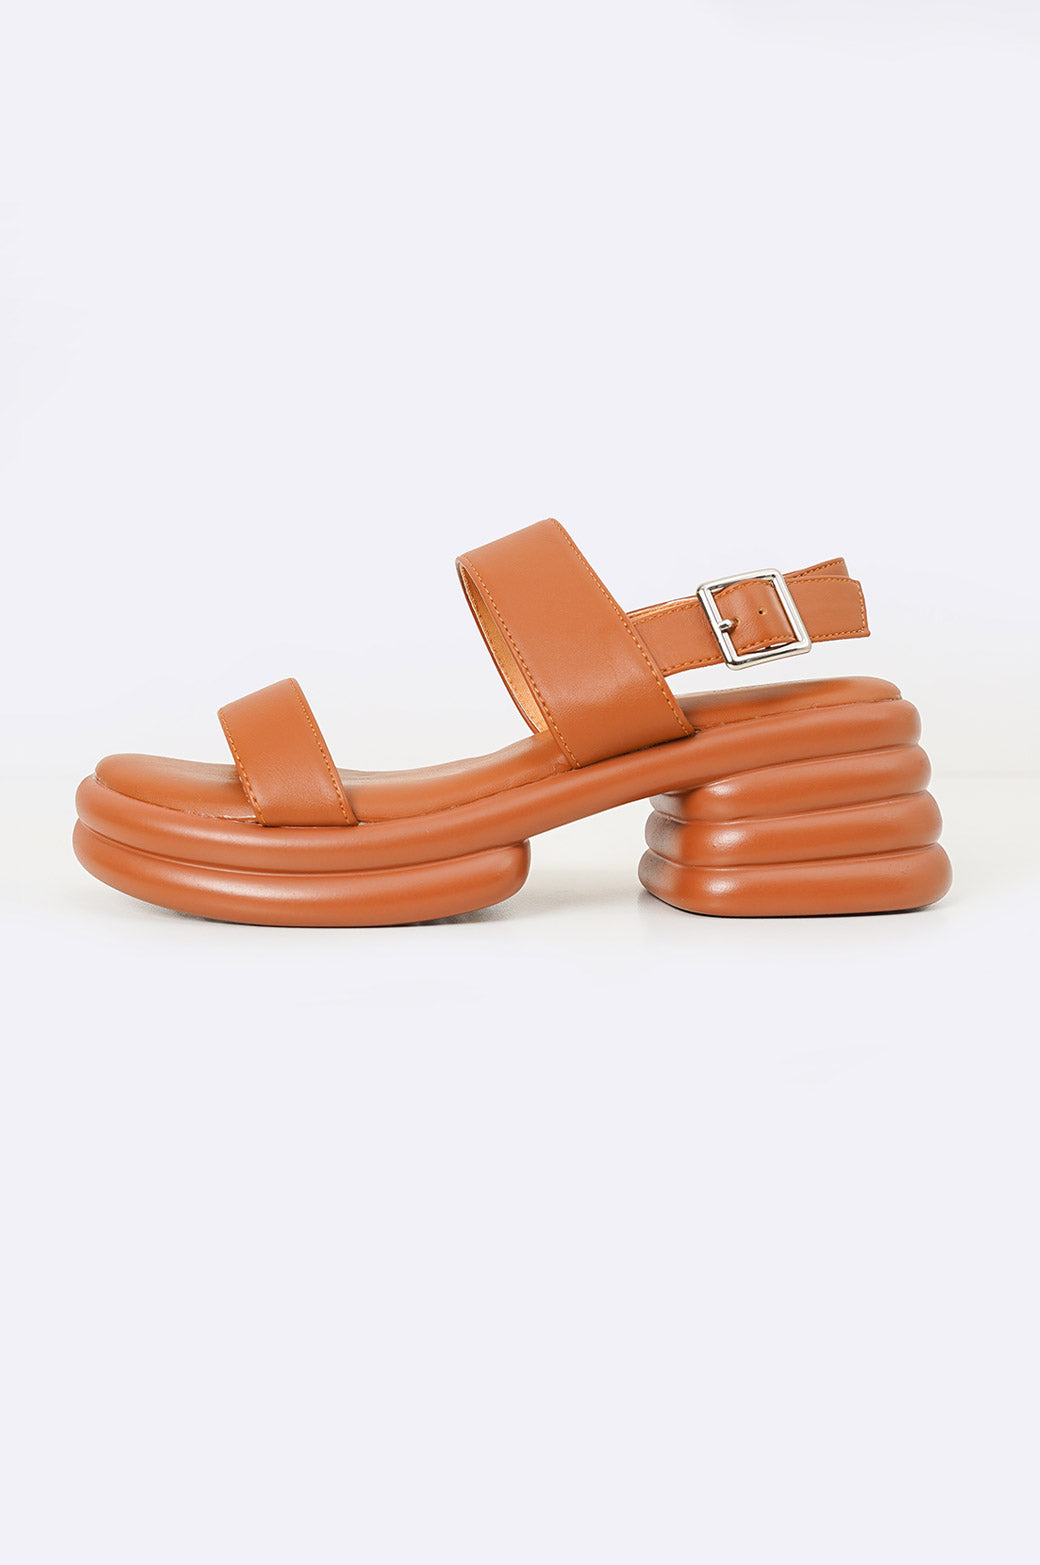 platform sandals for summer